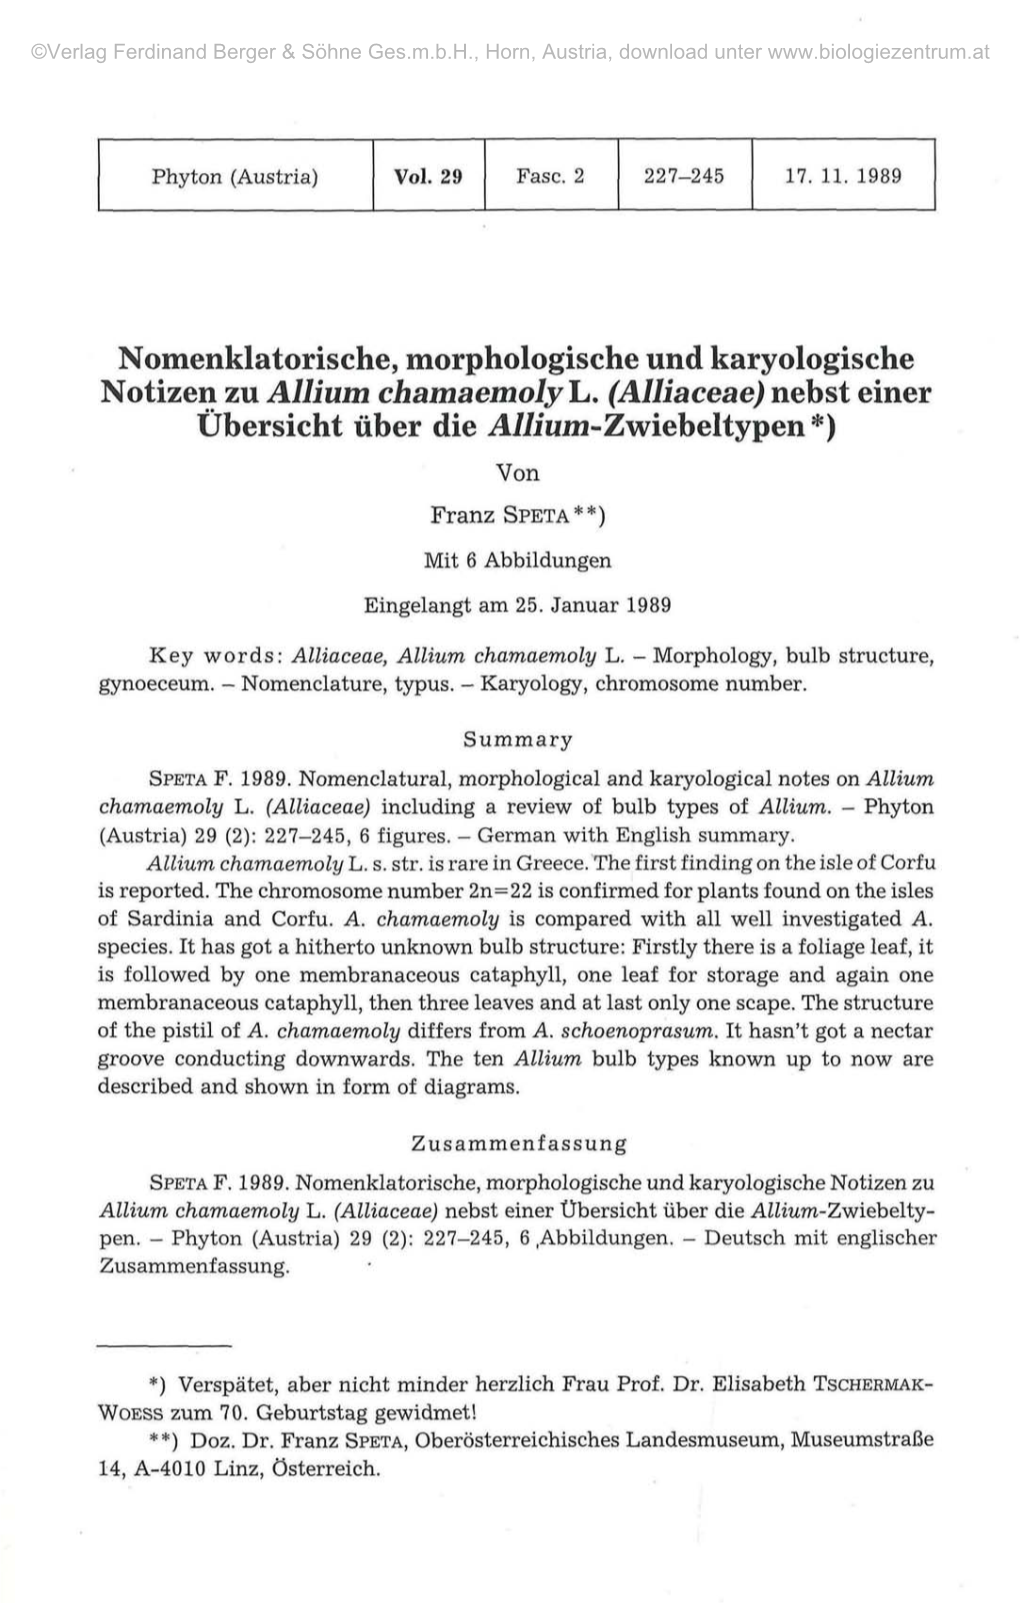 Nomenklatorische, Morphologische Und Karyologische Notizen Zu Allium Chamaemoly L